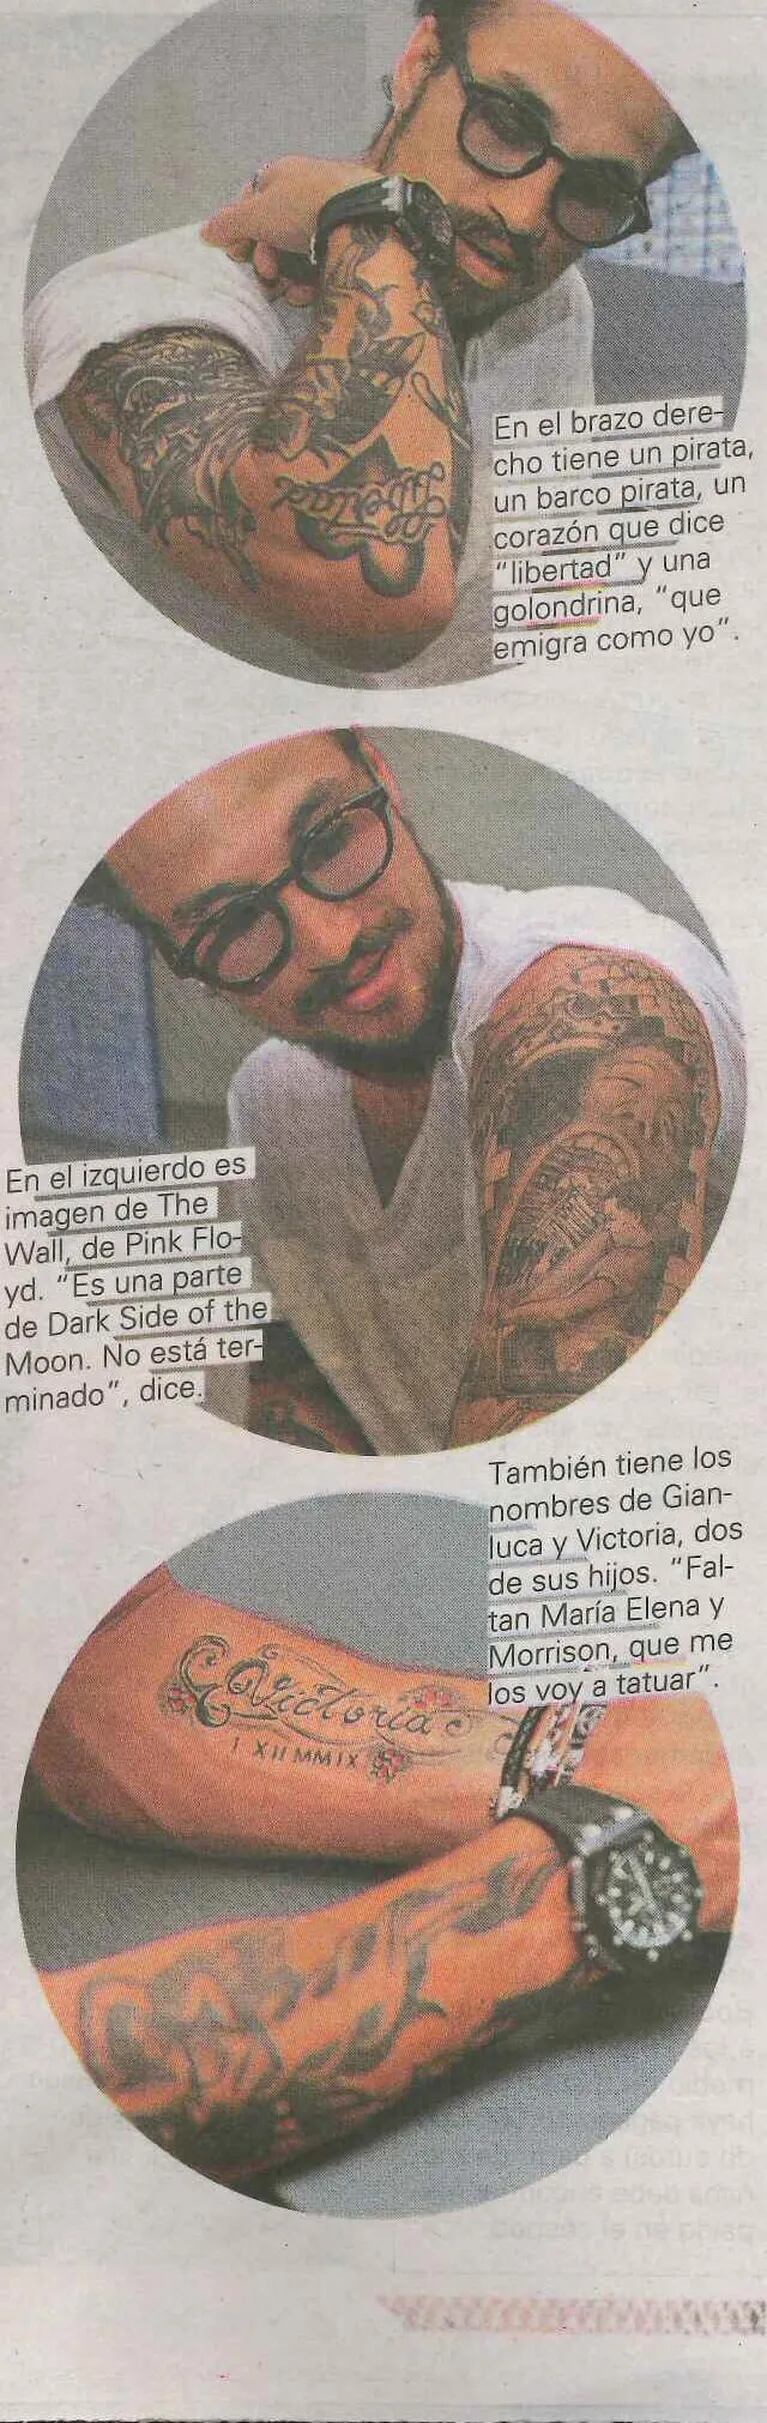 Daniel Osvaldo mostró y explicó sus tatuajes en el diario Olé.